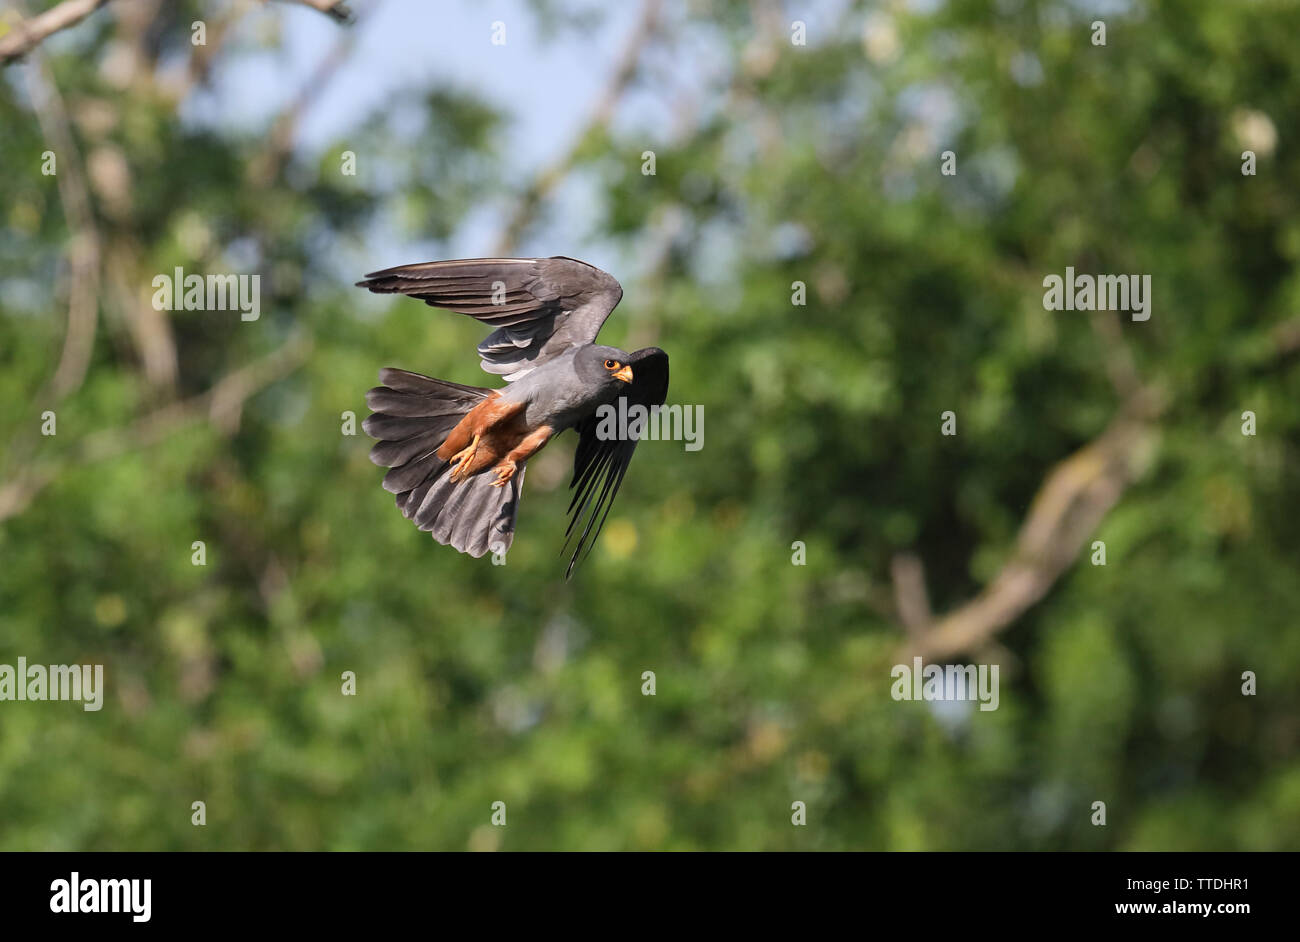 Männlich Red-footed Falcon (Falco vespertinus) im Flug. Die Art gilt als potenziell gefährdet auf der Roten Liste der IUCN aufgeführt. In Hortobagy, HU fotografiert. Stockfoto